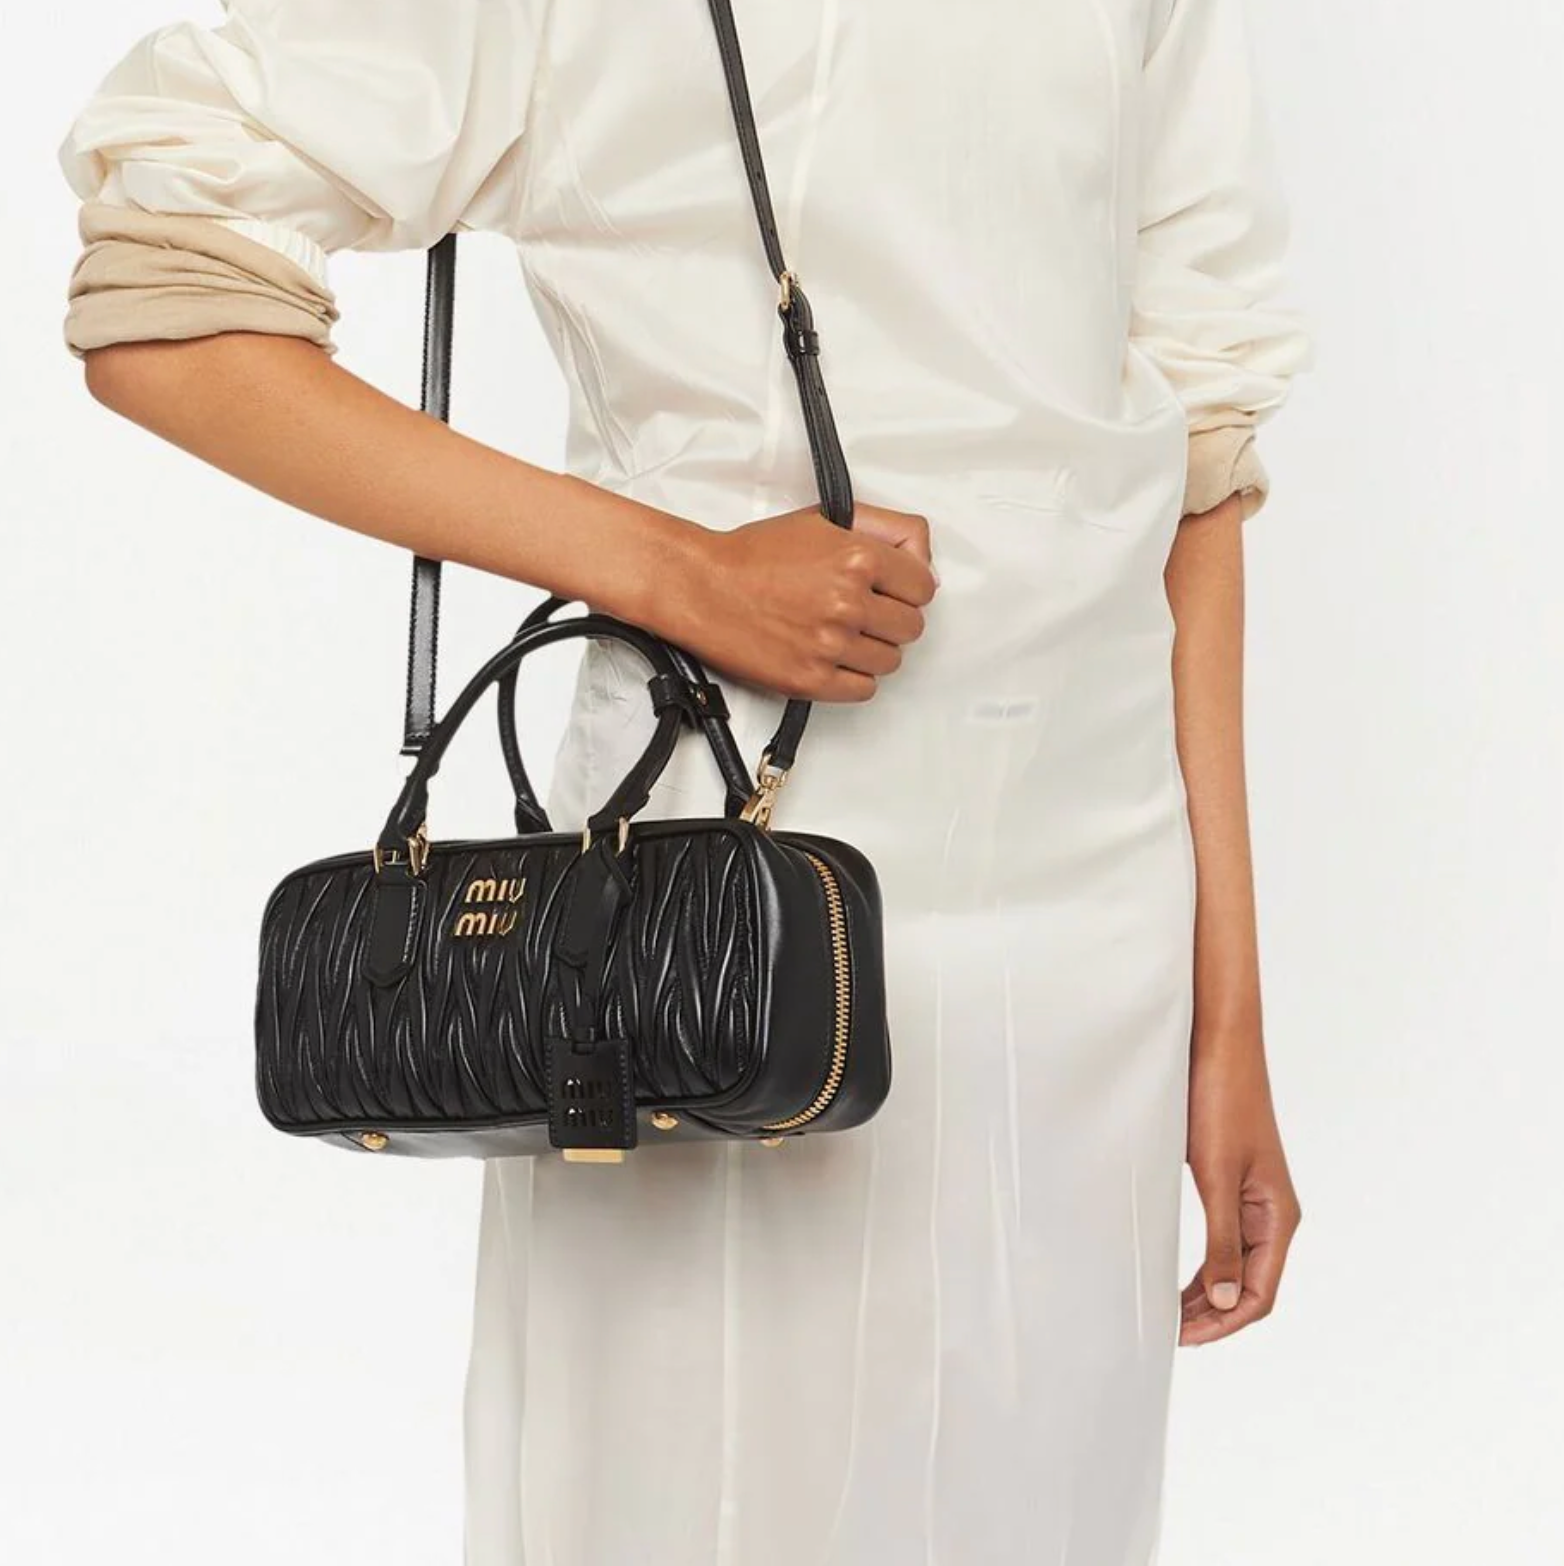 Miu Miu Black Leather and flannel shoulder Handbag Vintage Purse